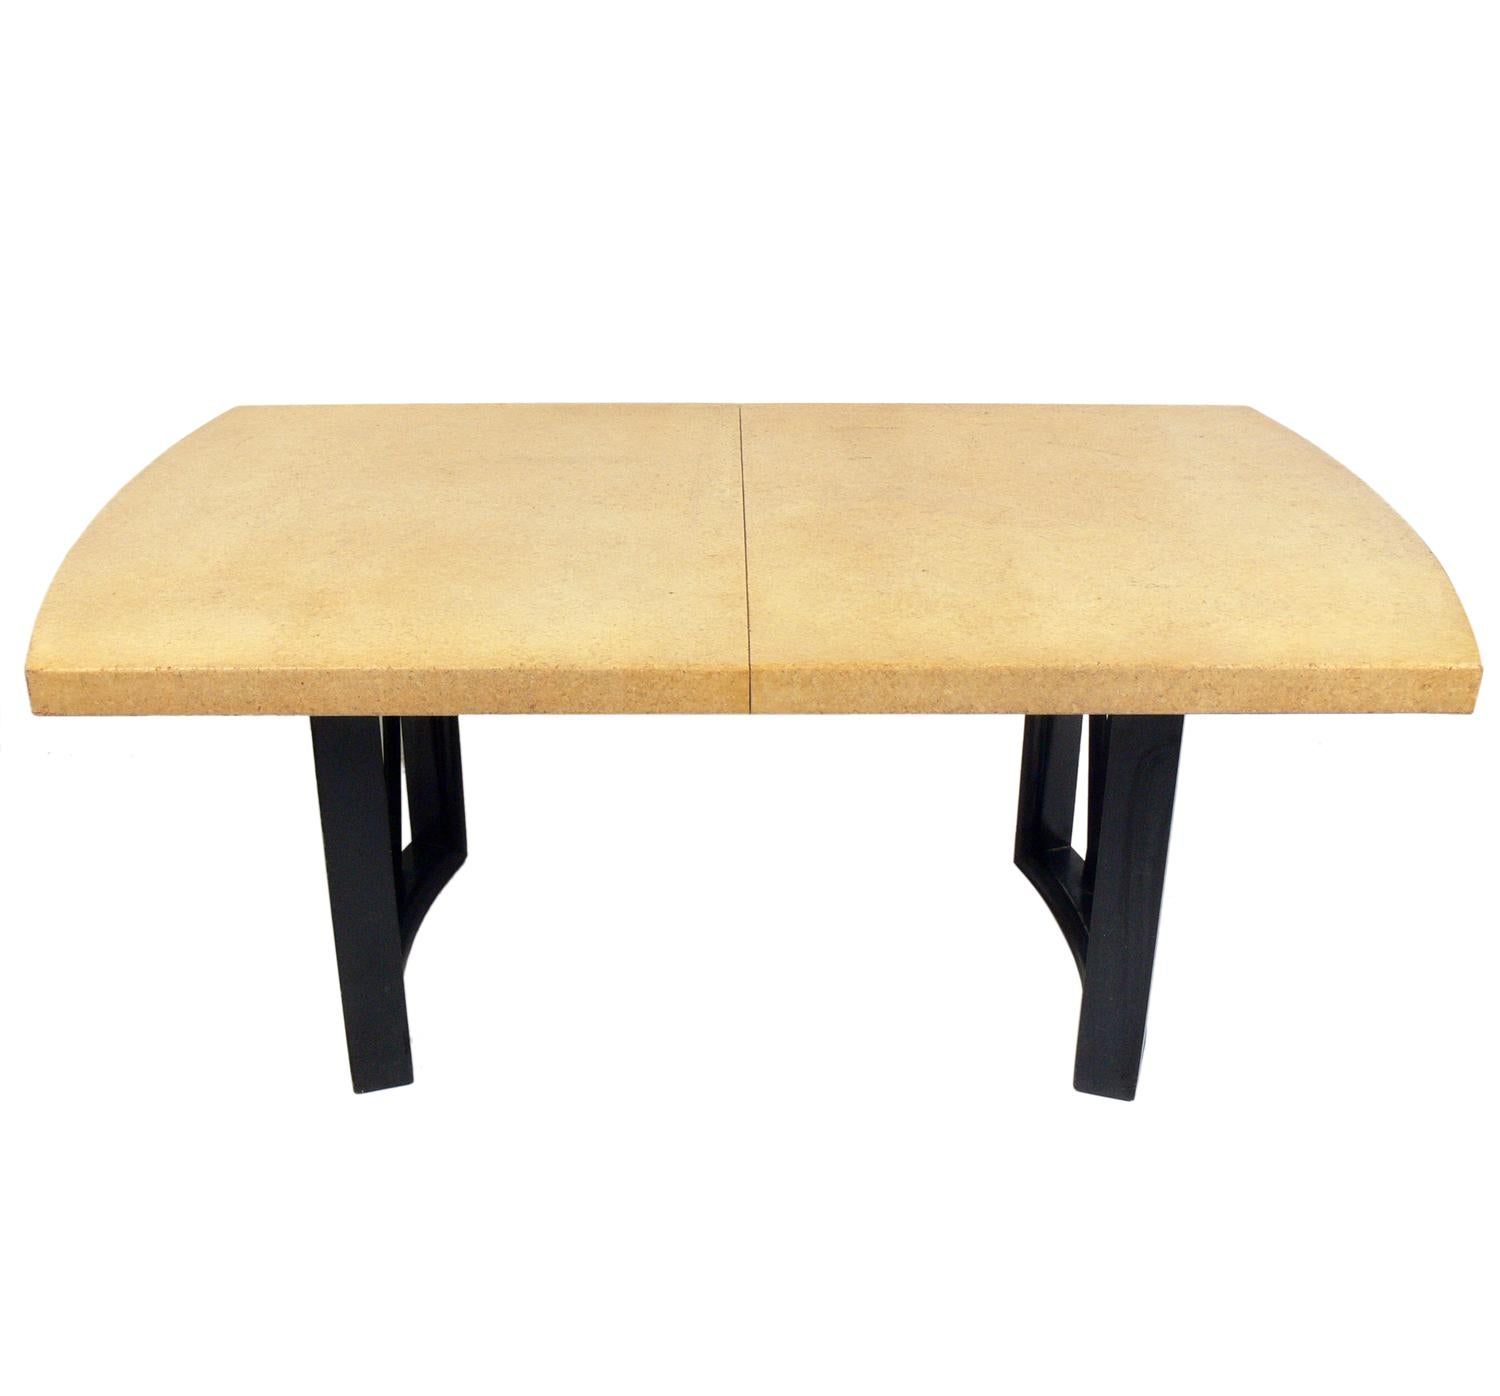 Élégante table à manger à plateau en liège, conçue par Paul Frankl pour The Johnson Furniture Company, américaine, vers les années 1940. Cette table est actuellement en cours de finition et peut être complétée dans la couleur de votre choix. Le prix